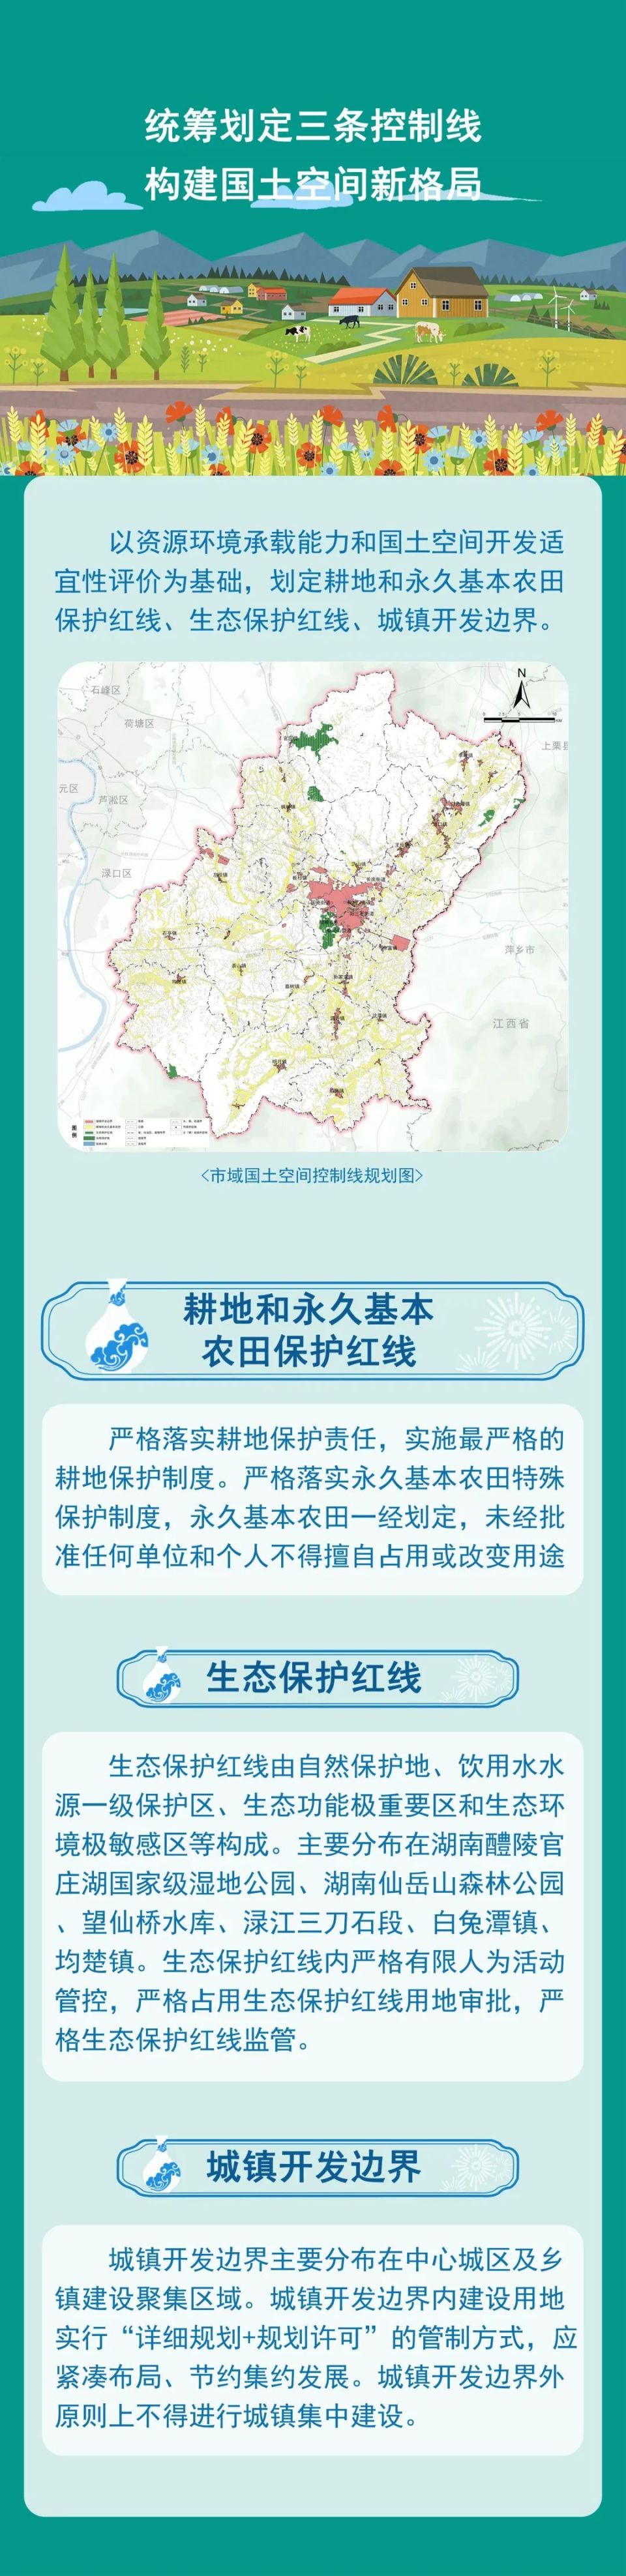 一图读懂丨醴陵市国土空间总体规划